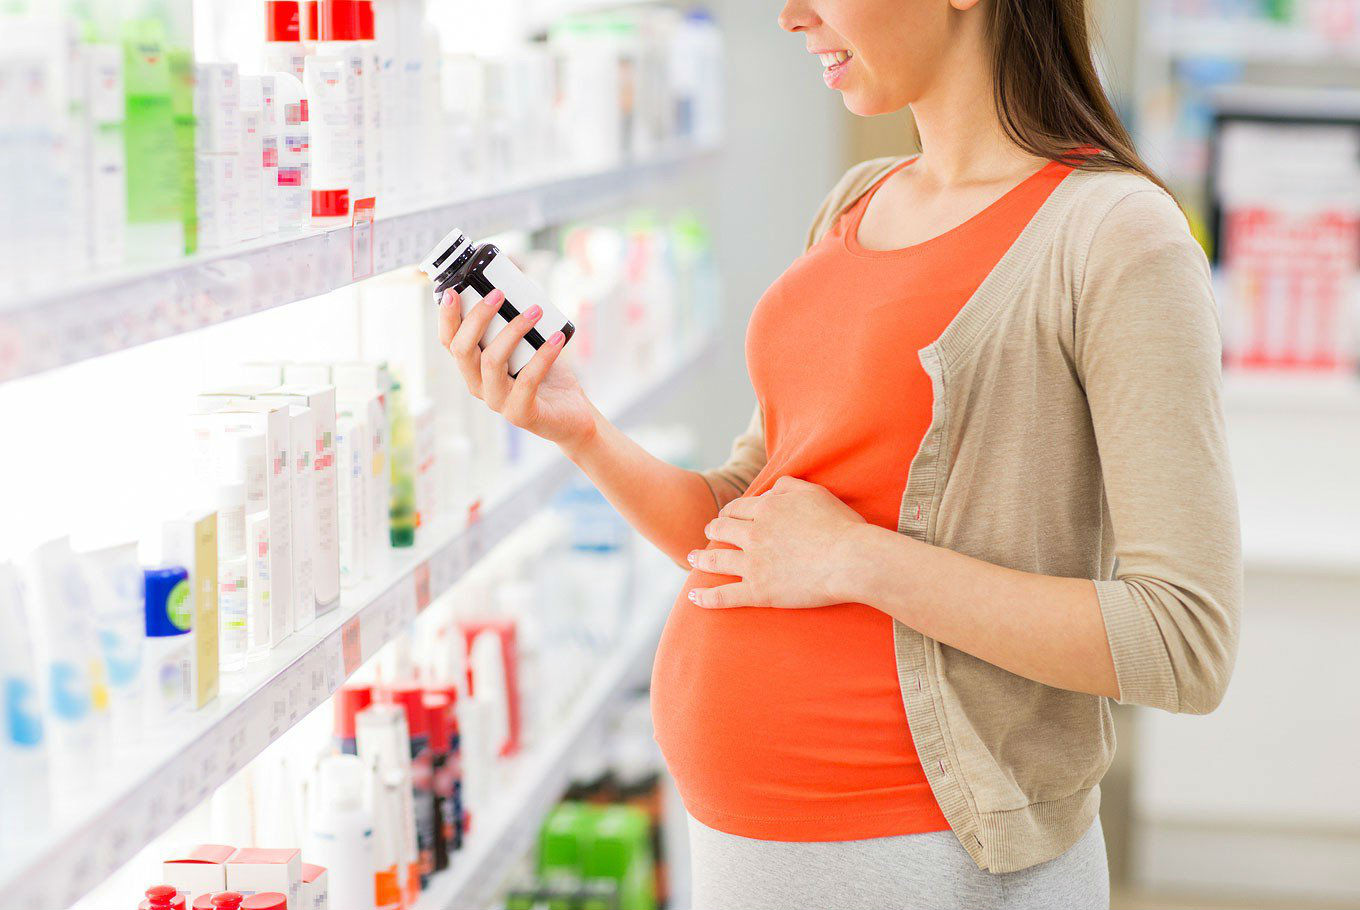 Витамины при планировании беременности для мужчин и женщин - физиологическое значение, дозировка, характеристики и отзывы о популярных витаминных комплексах